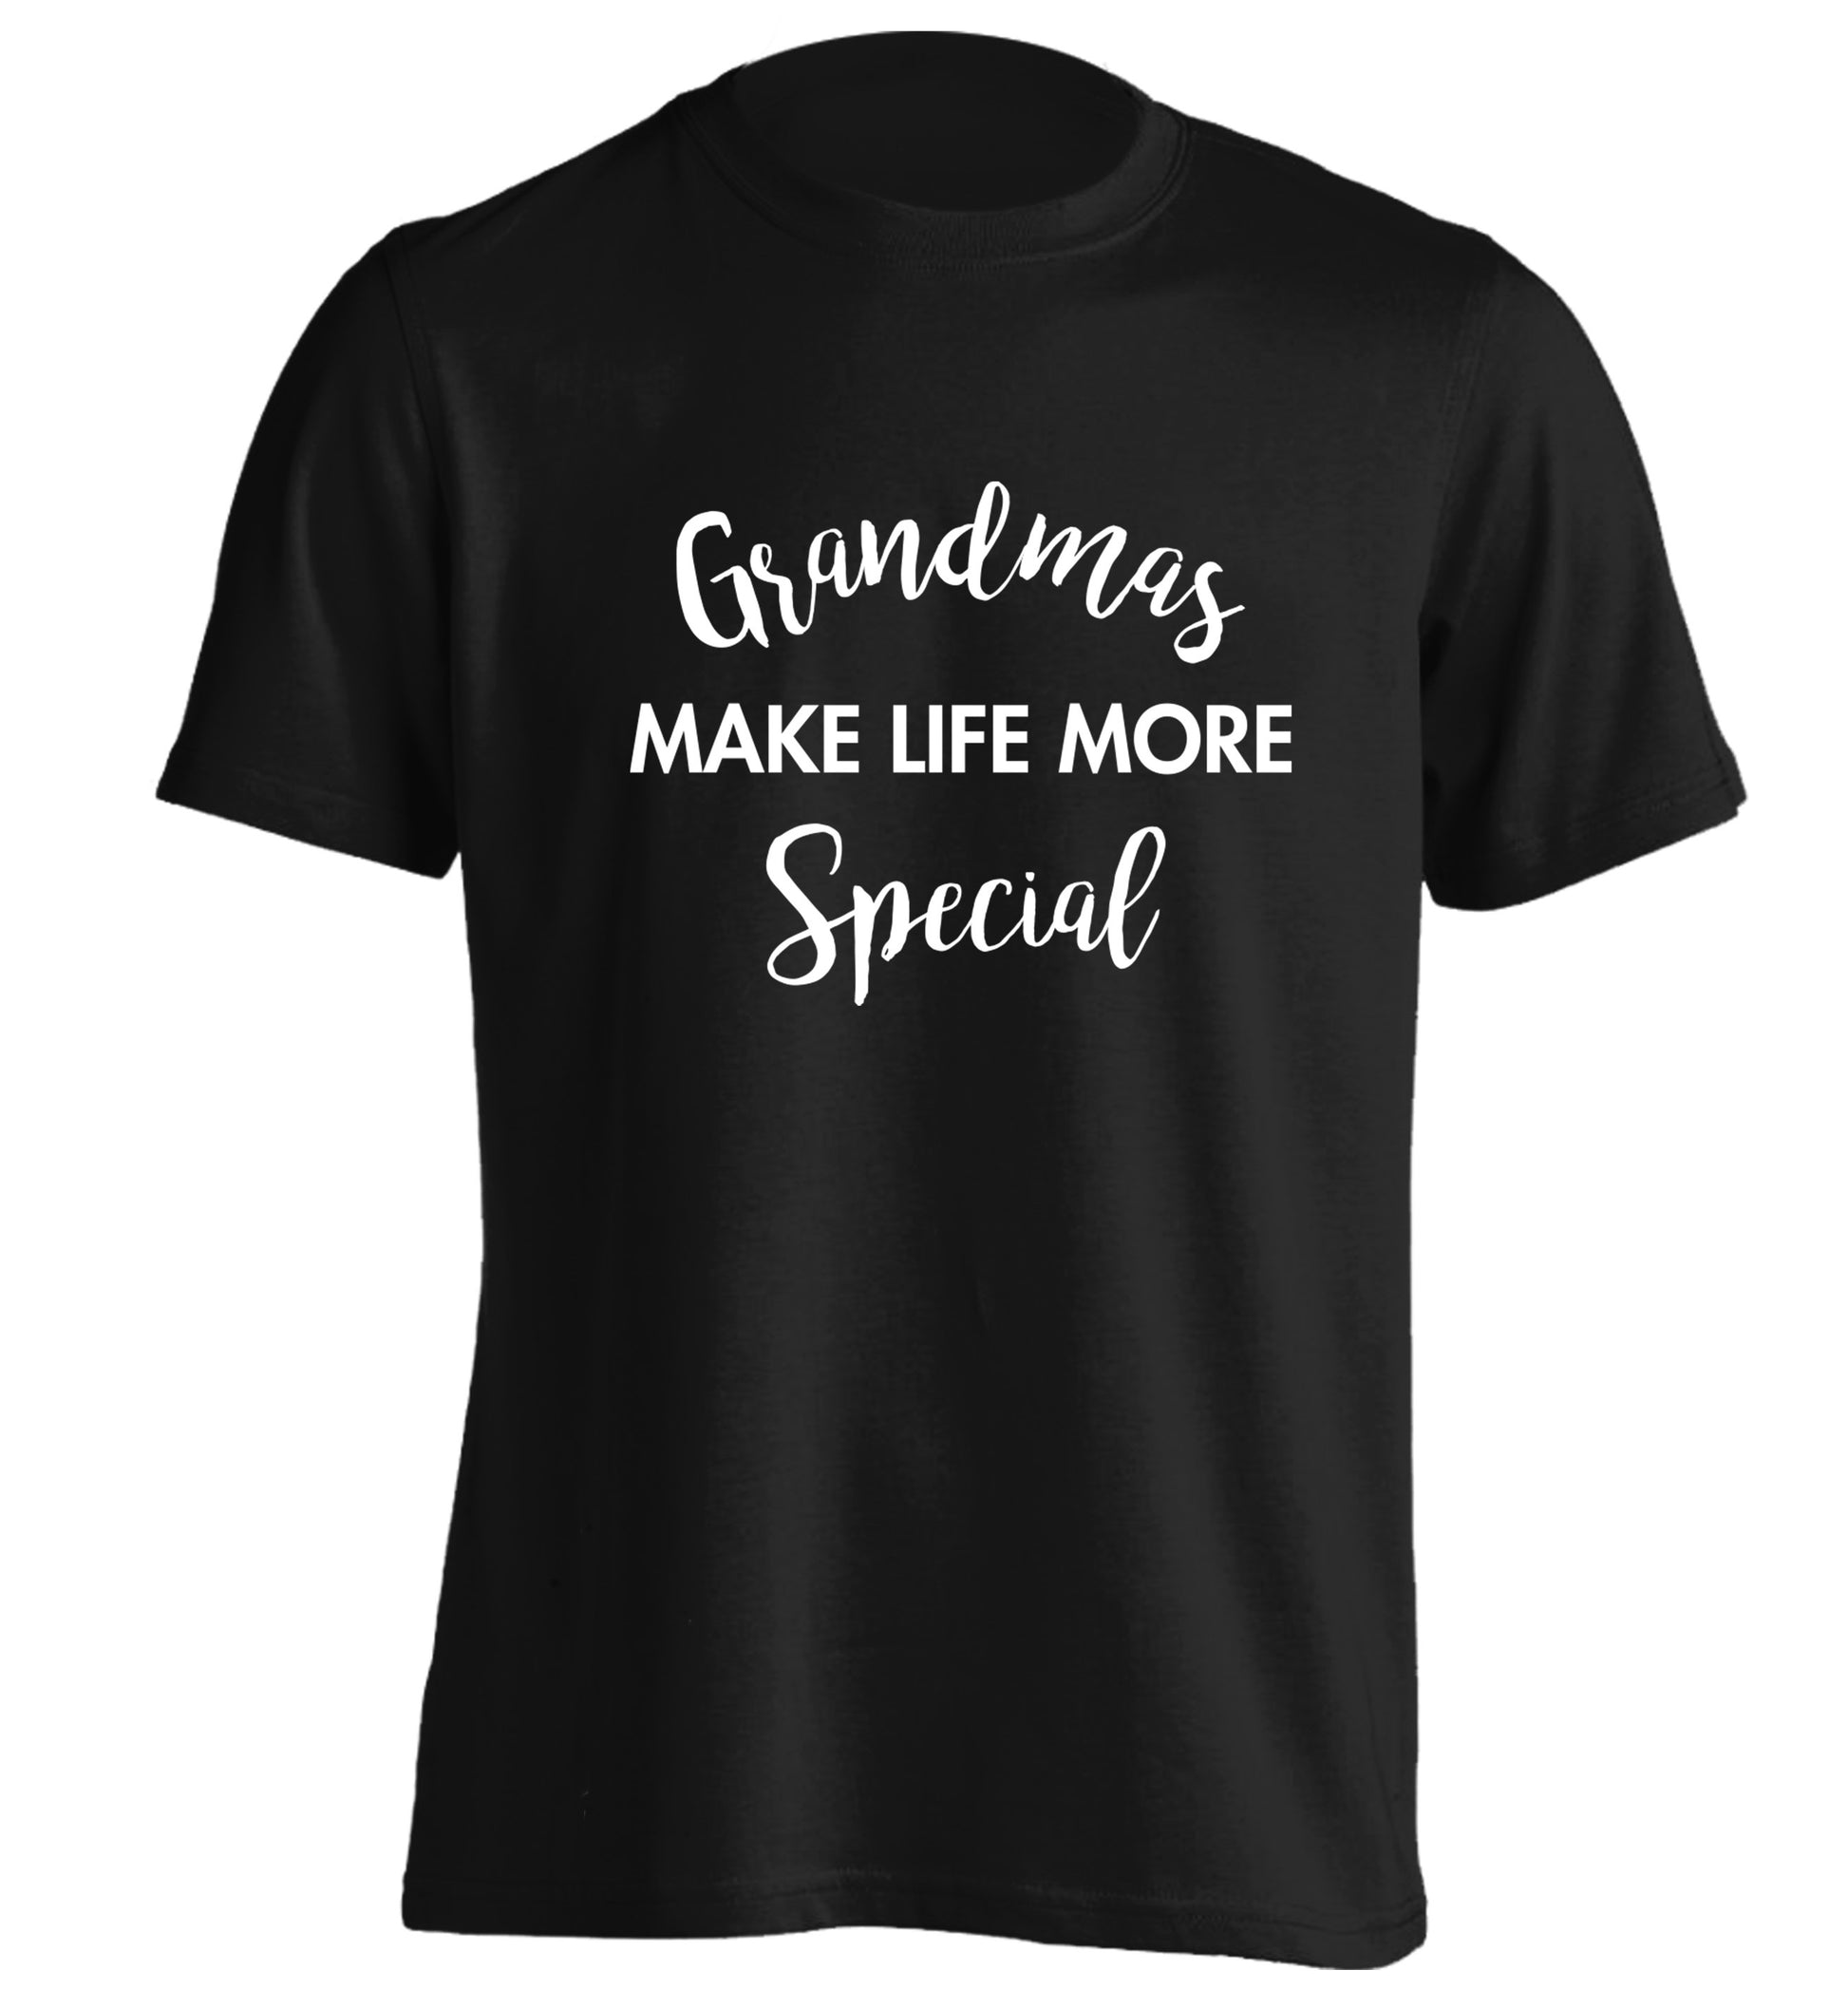 Grandmas make life more special adults unisex black Tshirt 2XL